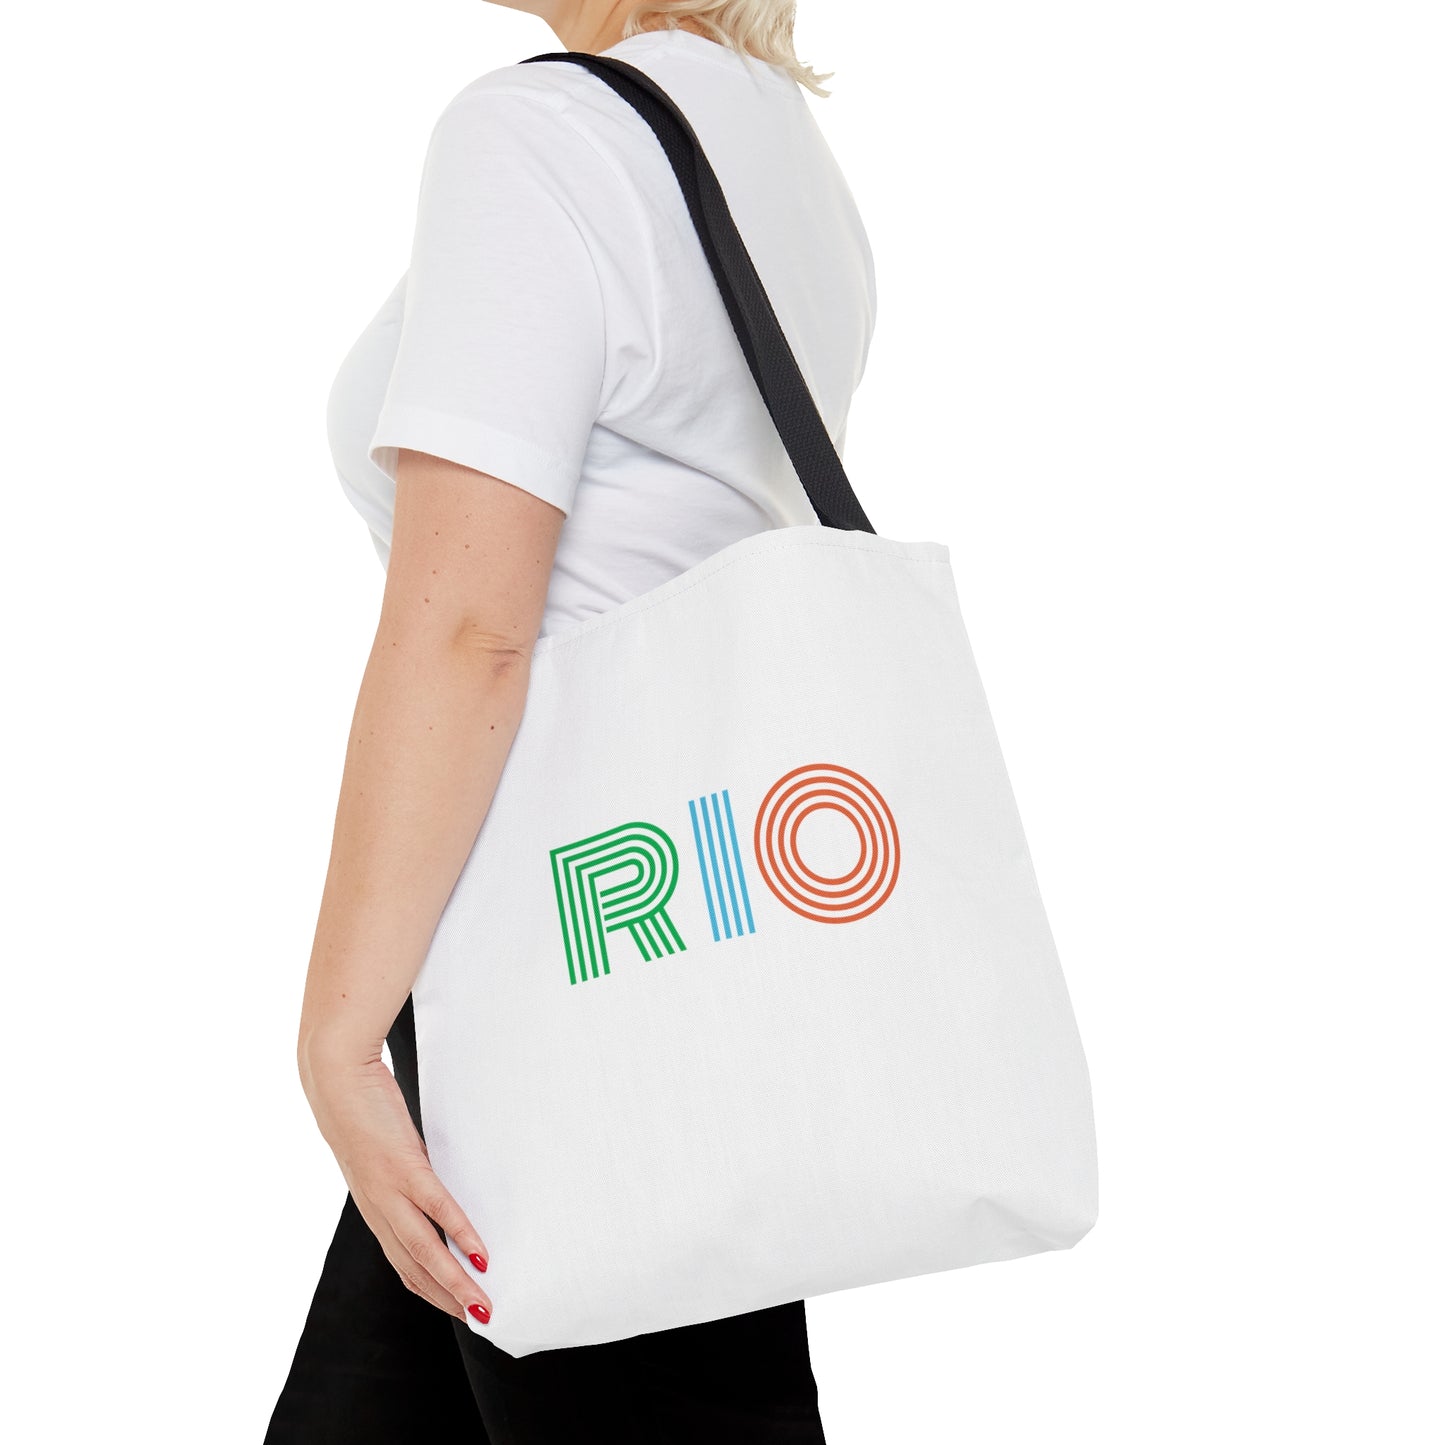 RIO Tote Bag